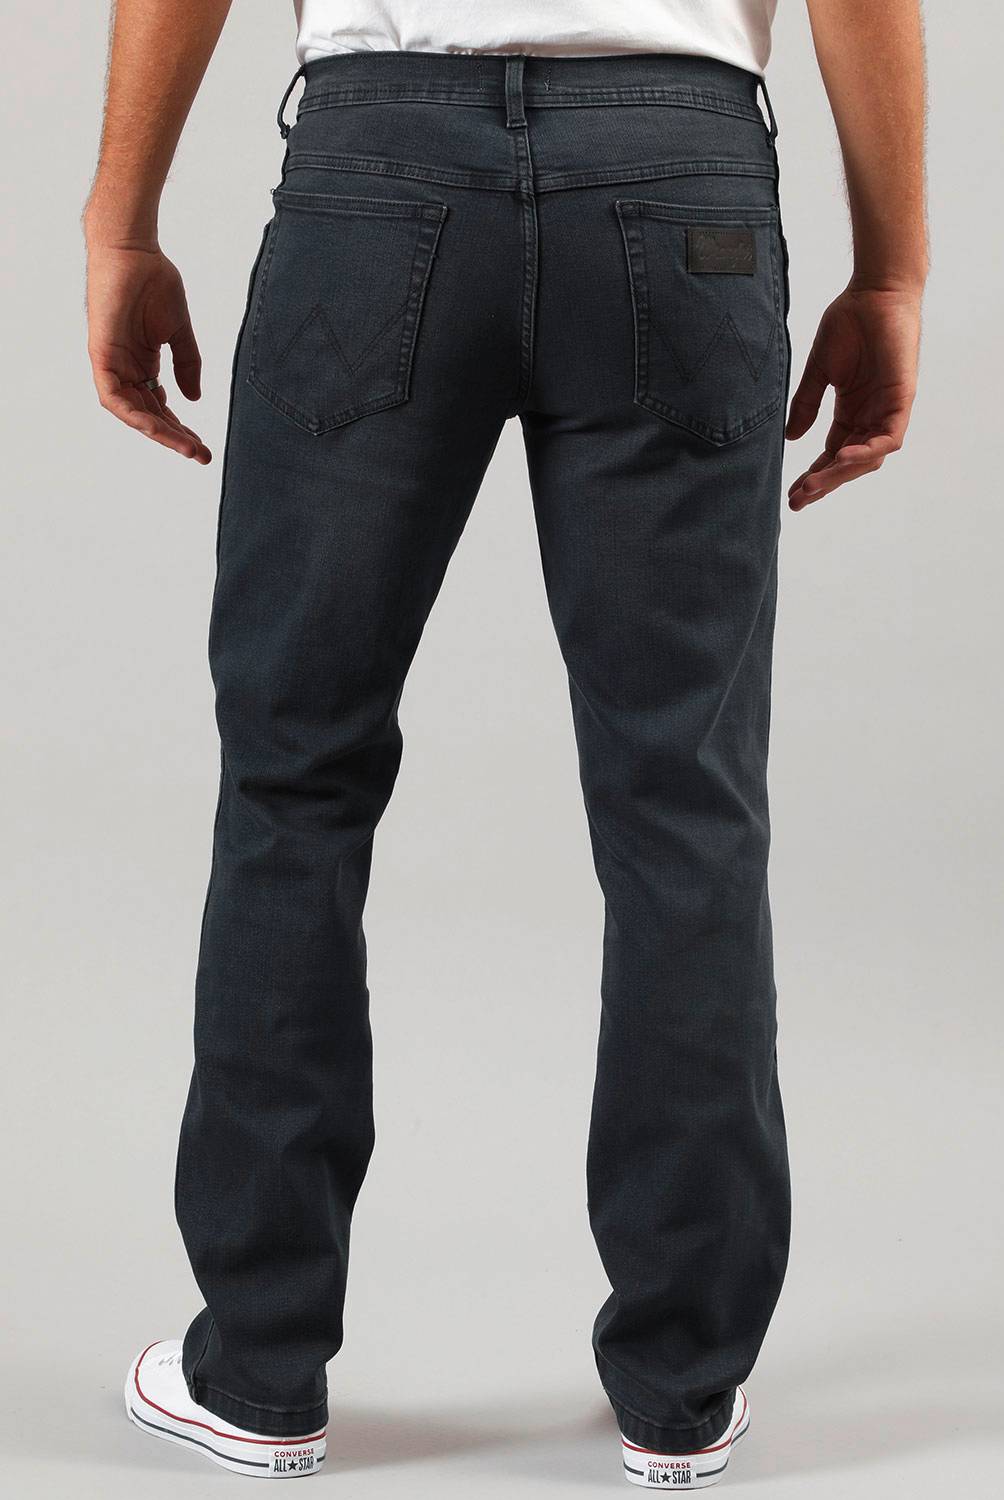 WRANGLER - Wrangler Jeans Regular Fit Hombre